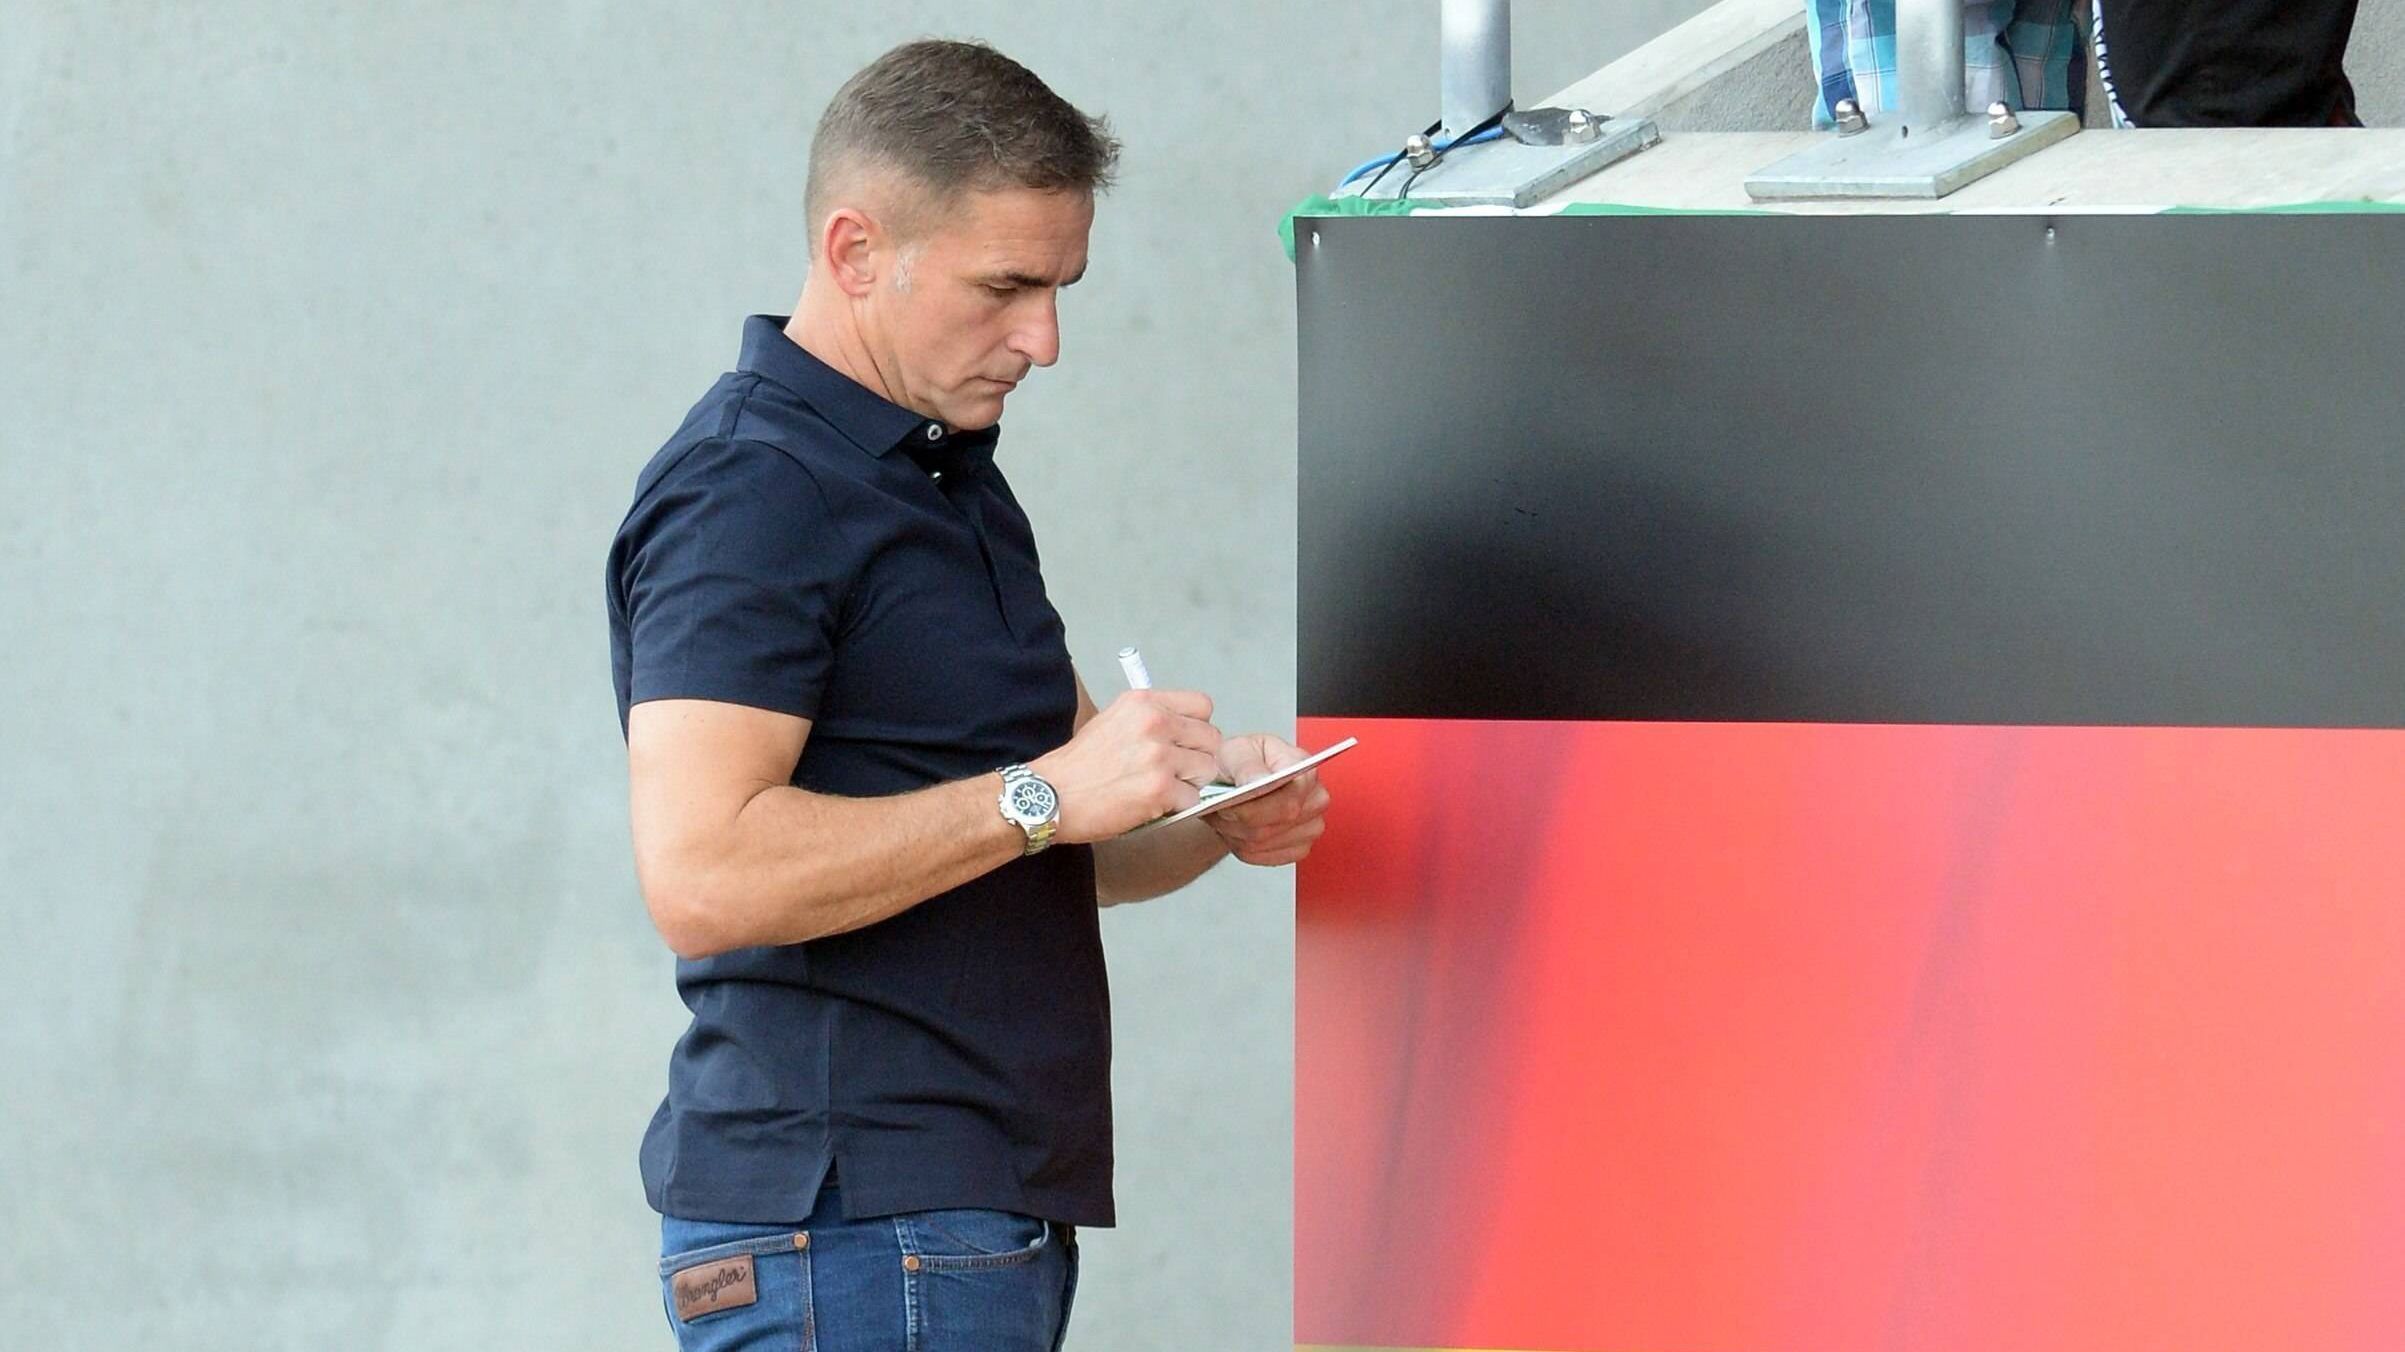 
                <strong>Einstand im September 2016</strong><br>
                Nach acht Jahren als Vorstandsvorsitzender beim 1. FC Kaiserslautern sucht sich Stefan Kuntz im September 2016 eine neue Herausforderung und wechselt zum DFB. Es ist der Beginn einer erfolgreichen Ära.
              